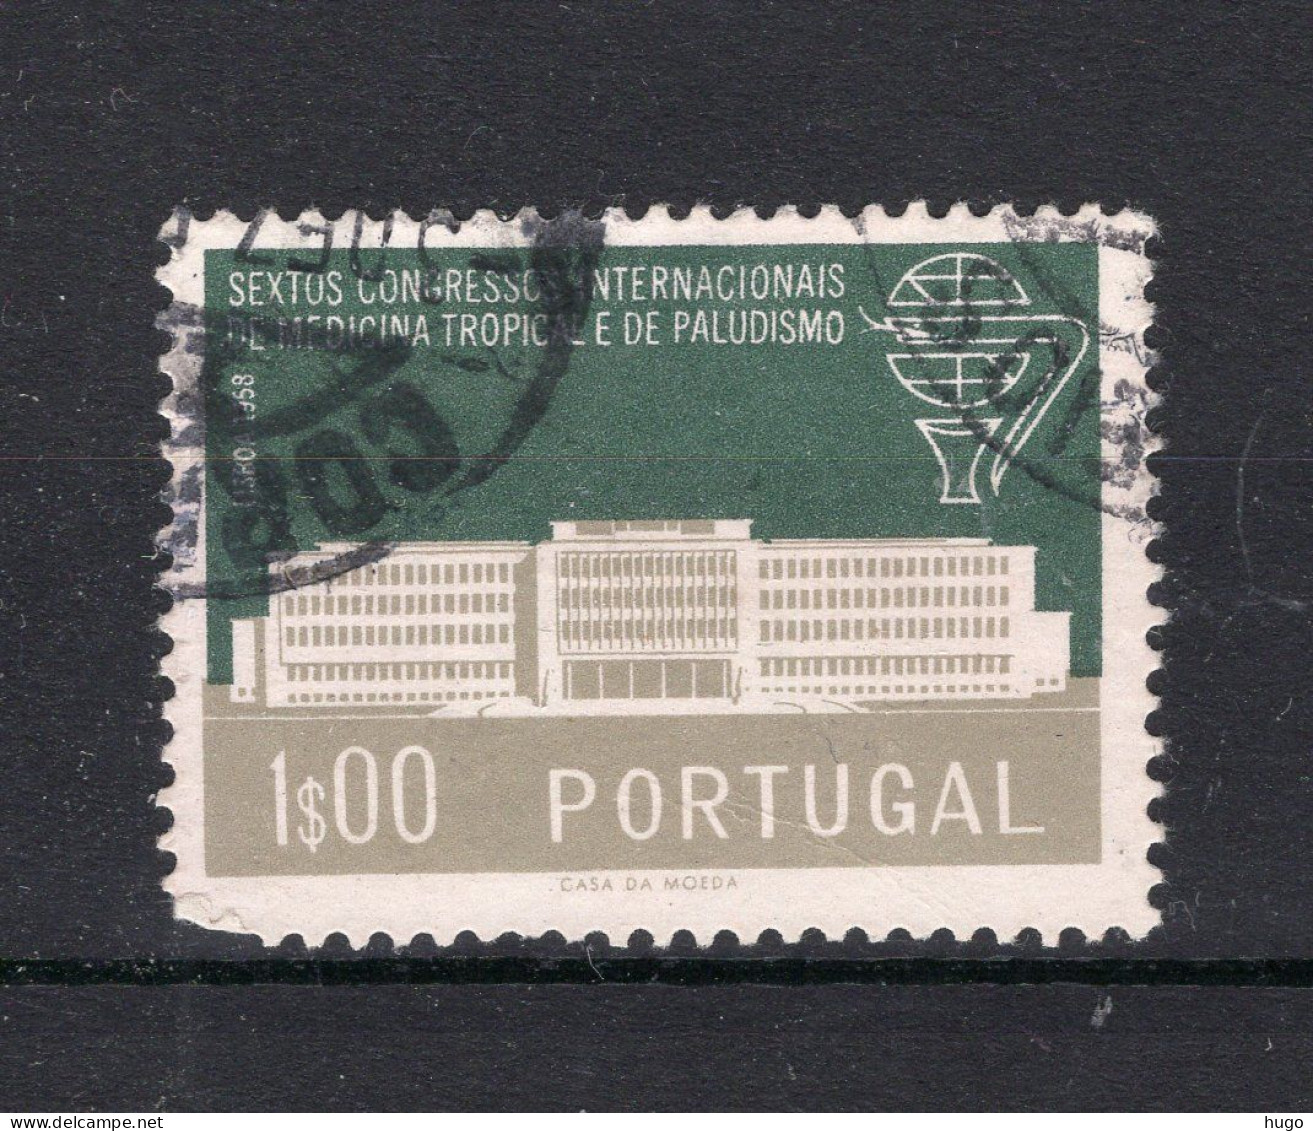 PORTUGAL Yt. 849° Gestempeld 1958 - Gebraucht